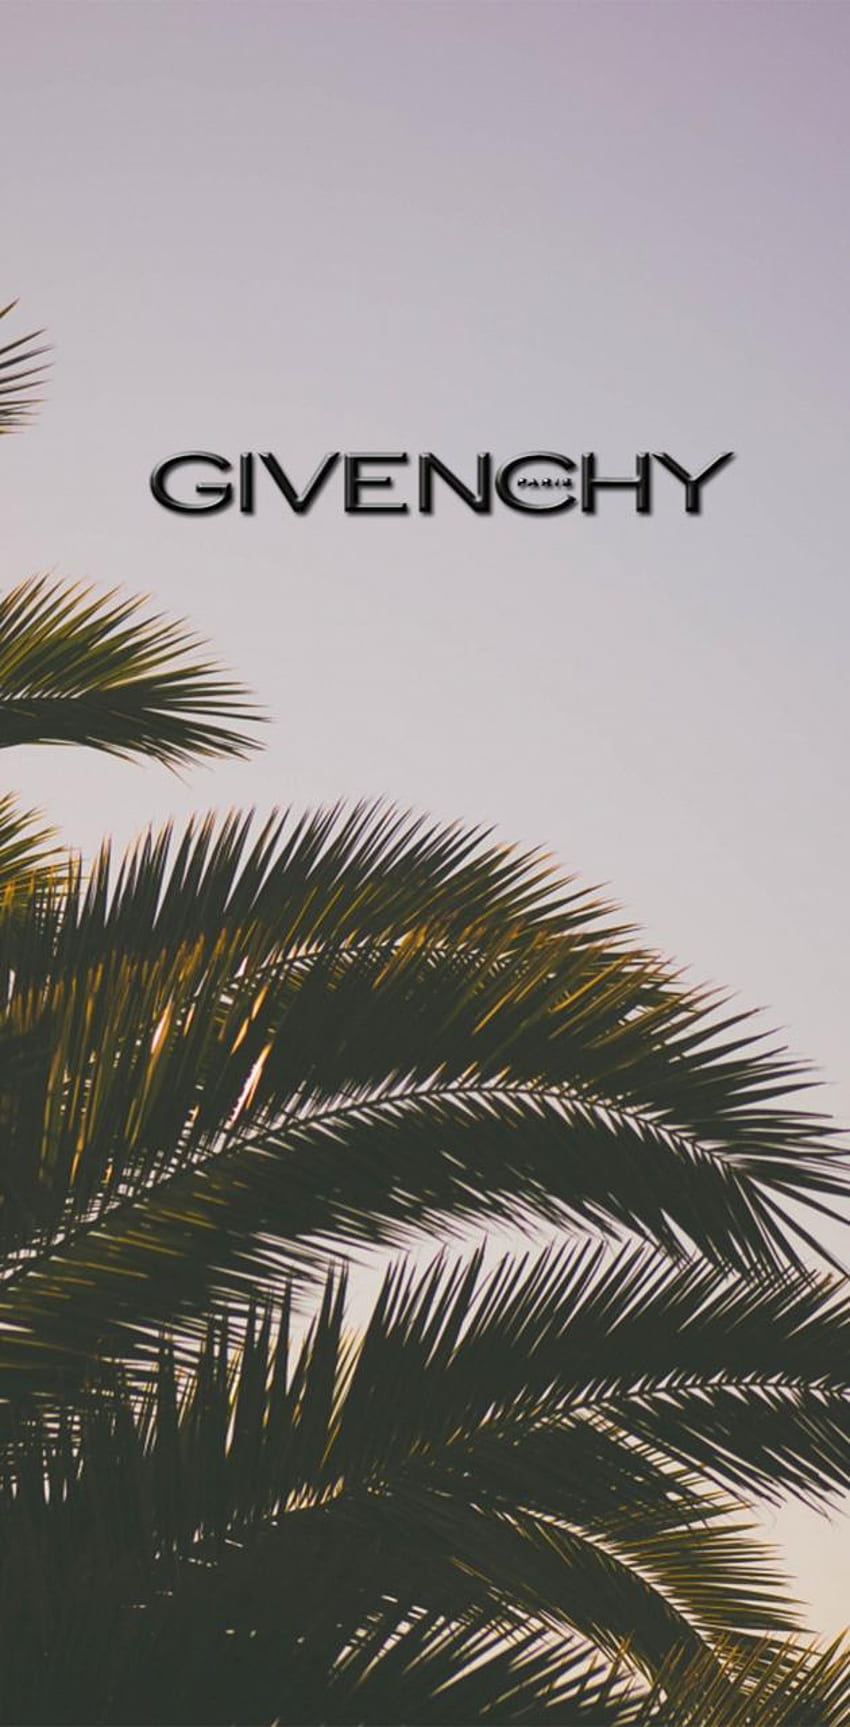 Givenchy | Givenchy wallpaper, Givenchy, Fashion wall art